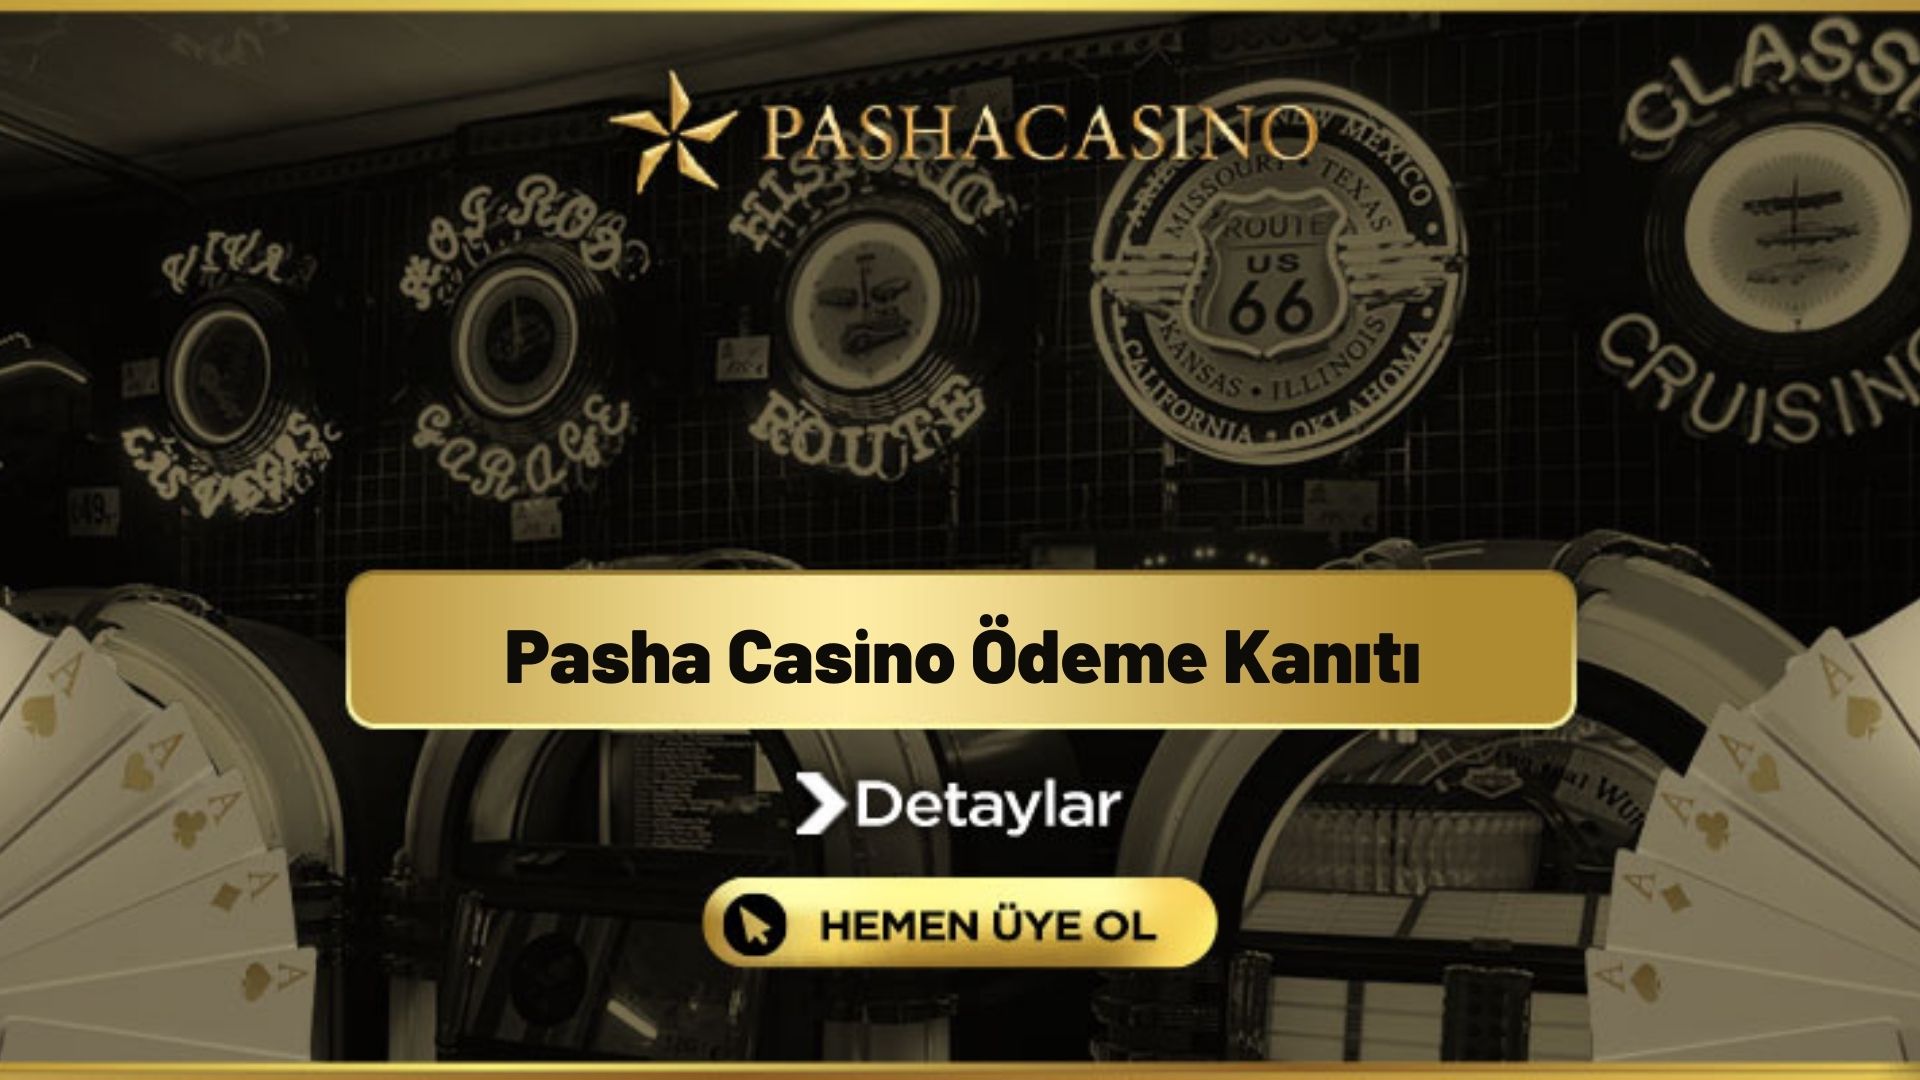 Pasha Casino Ödeme Kanıtı